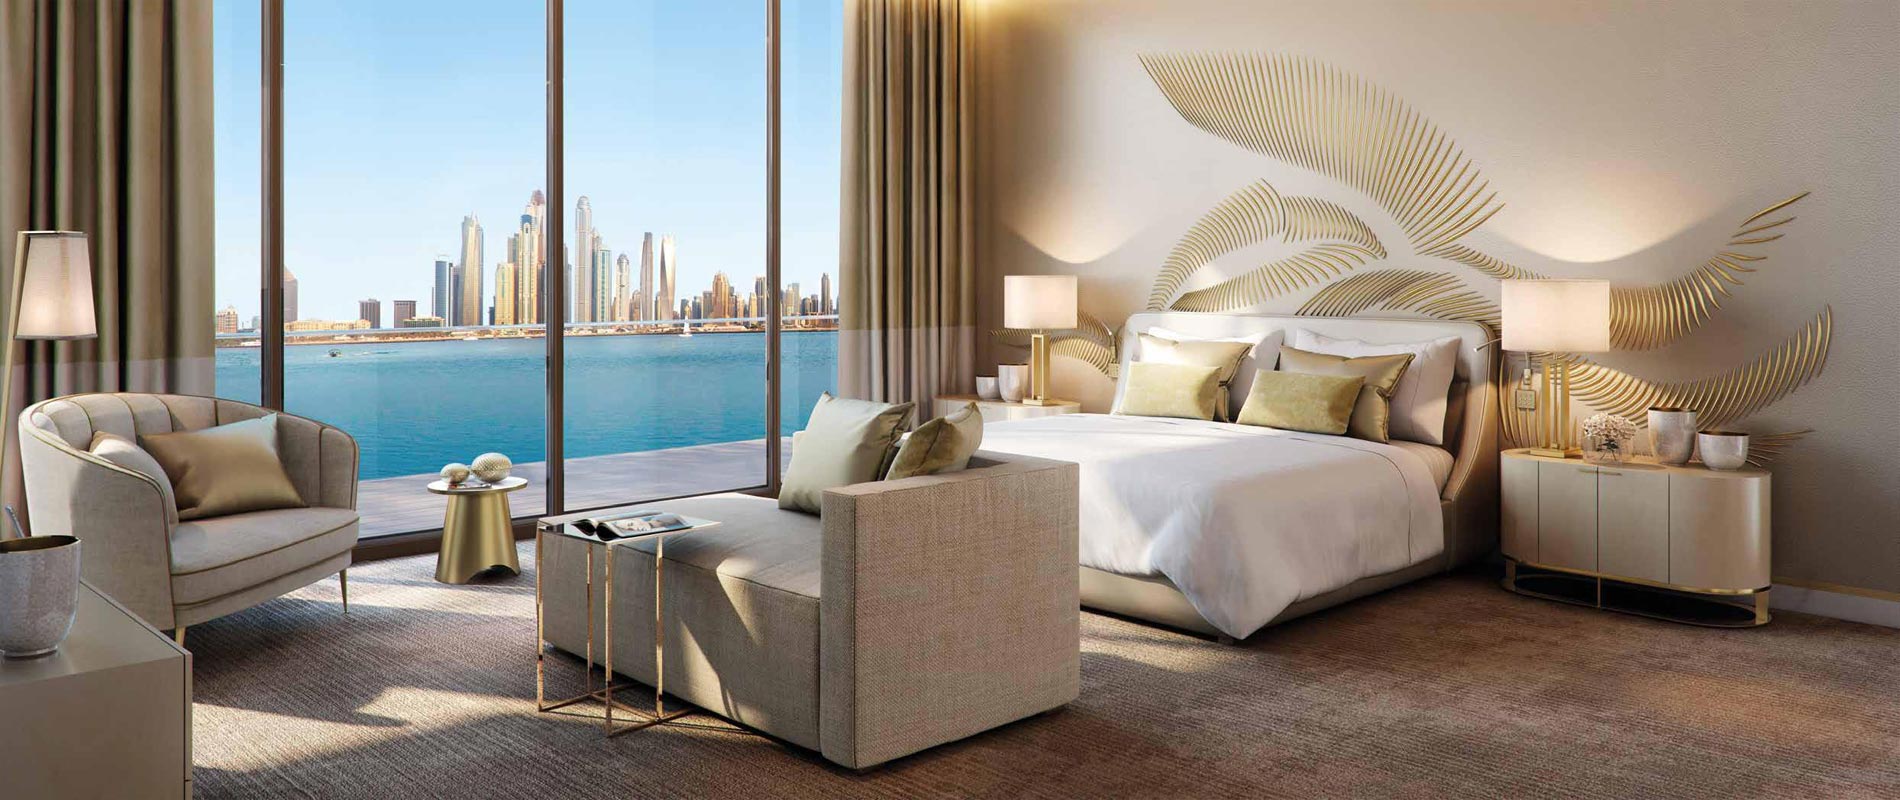 Royal Atlantis Residences - Palm Jumeirah Dubai.